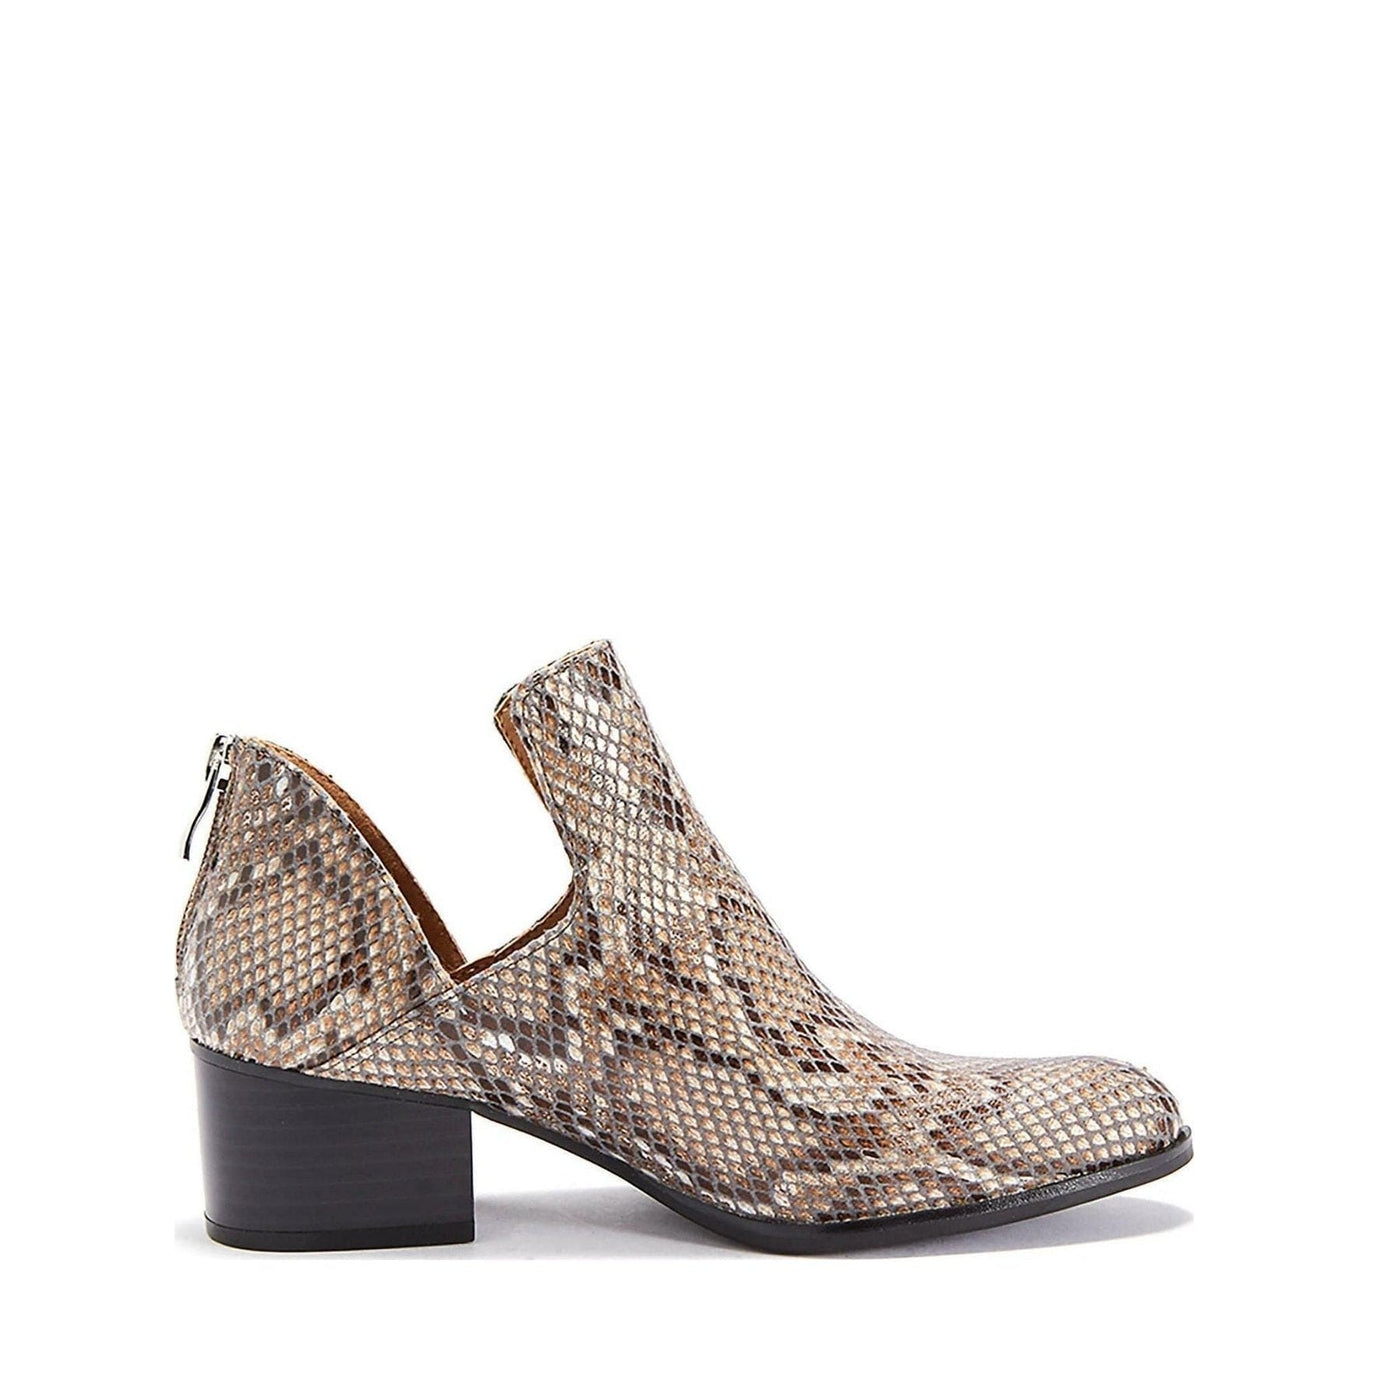 Womens Shoe Low Heel Snakeskin Style Fredricka Booties (size 7.5) - Deals